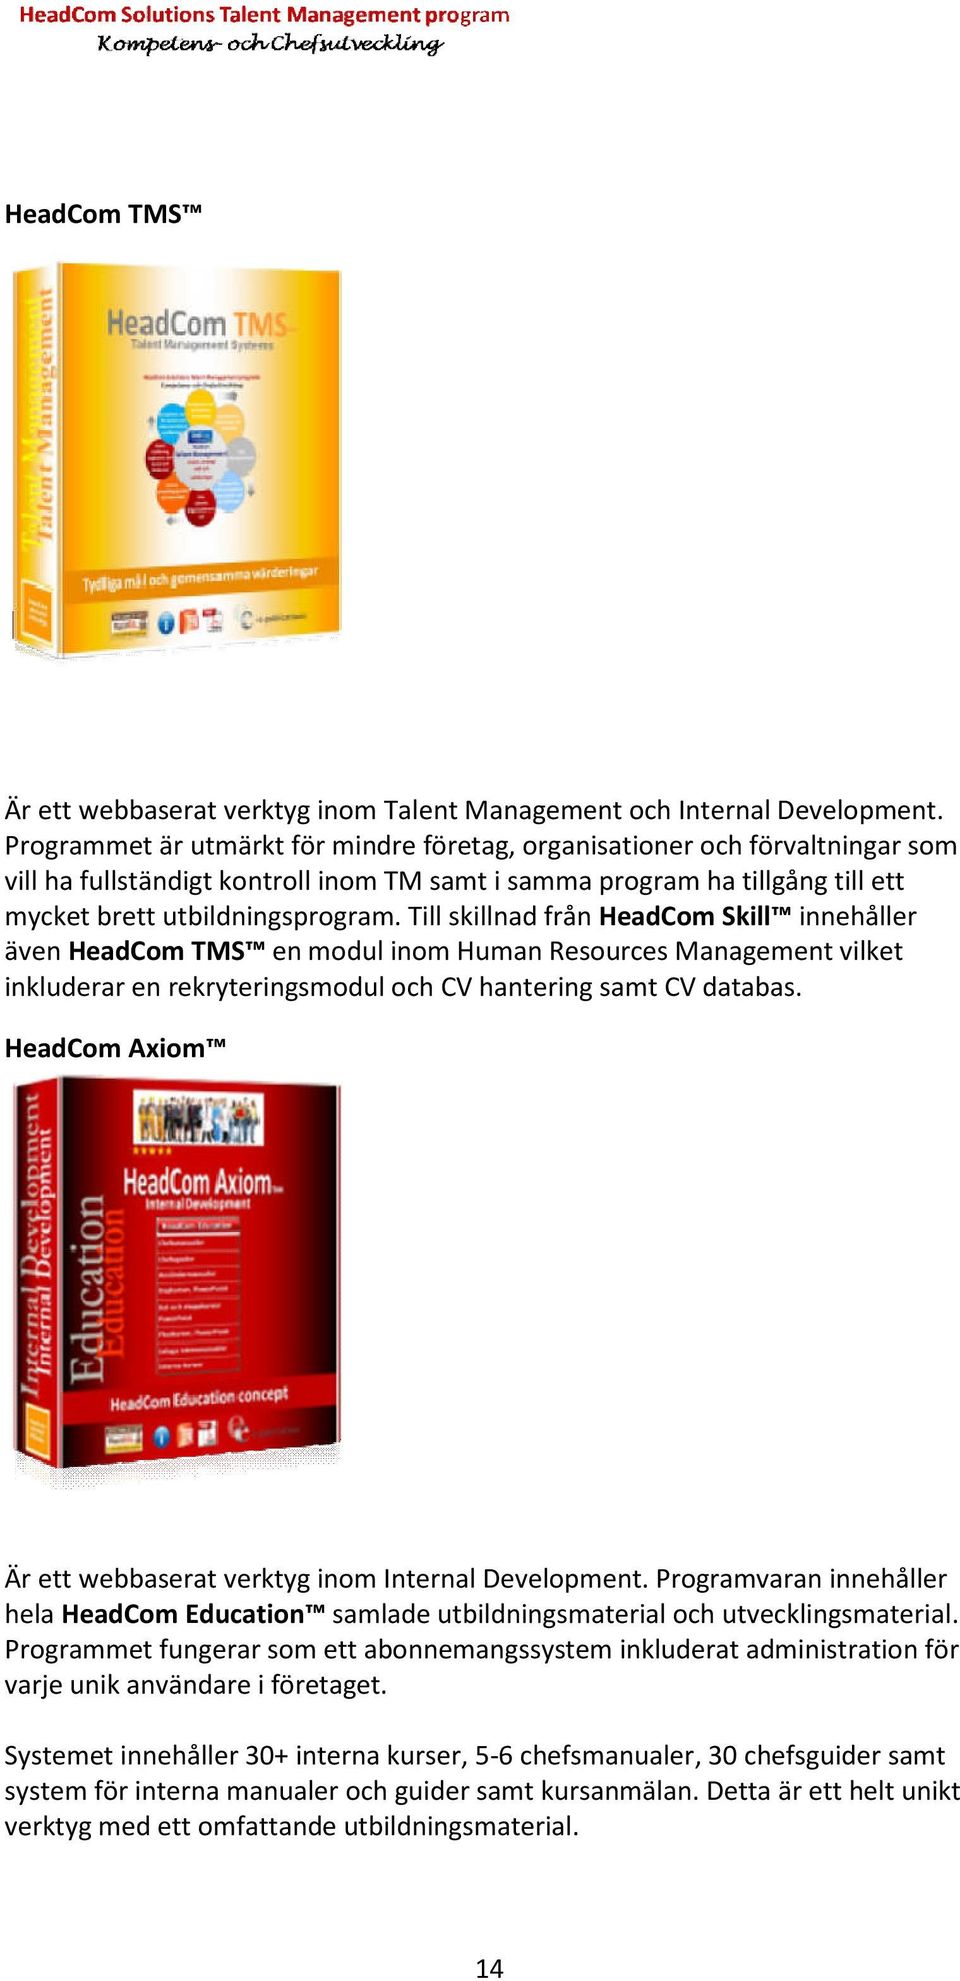 Till skillnad från HeadCom Skill innehåller även HeadCom TMS en modul inom Human Resources Management vilket inkluderar en rekryteringsmodul och CV hantering samt CV databas.